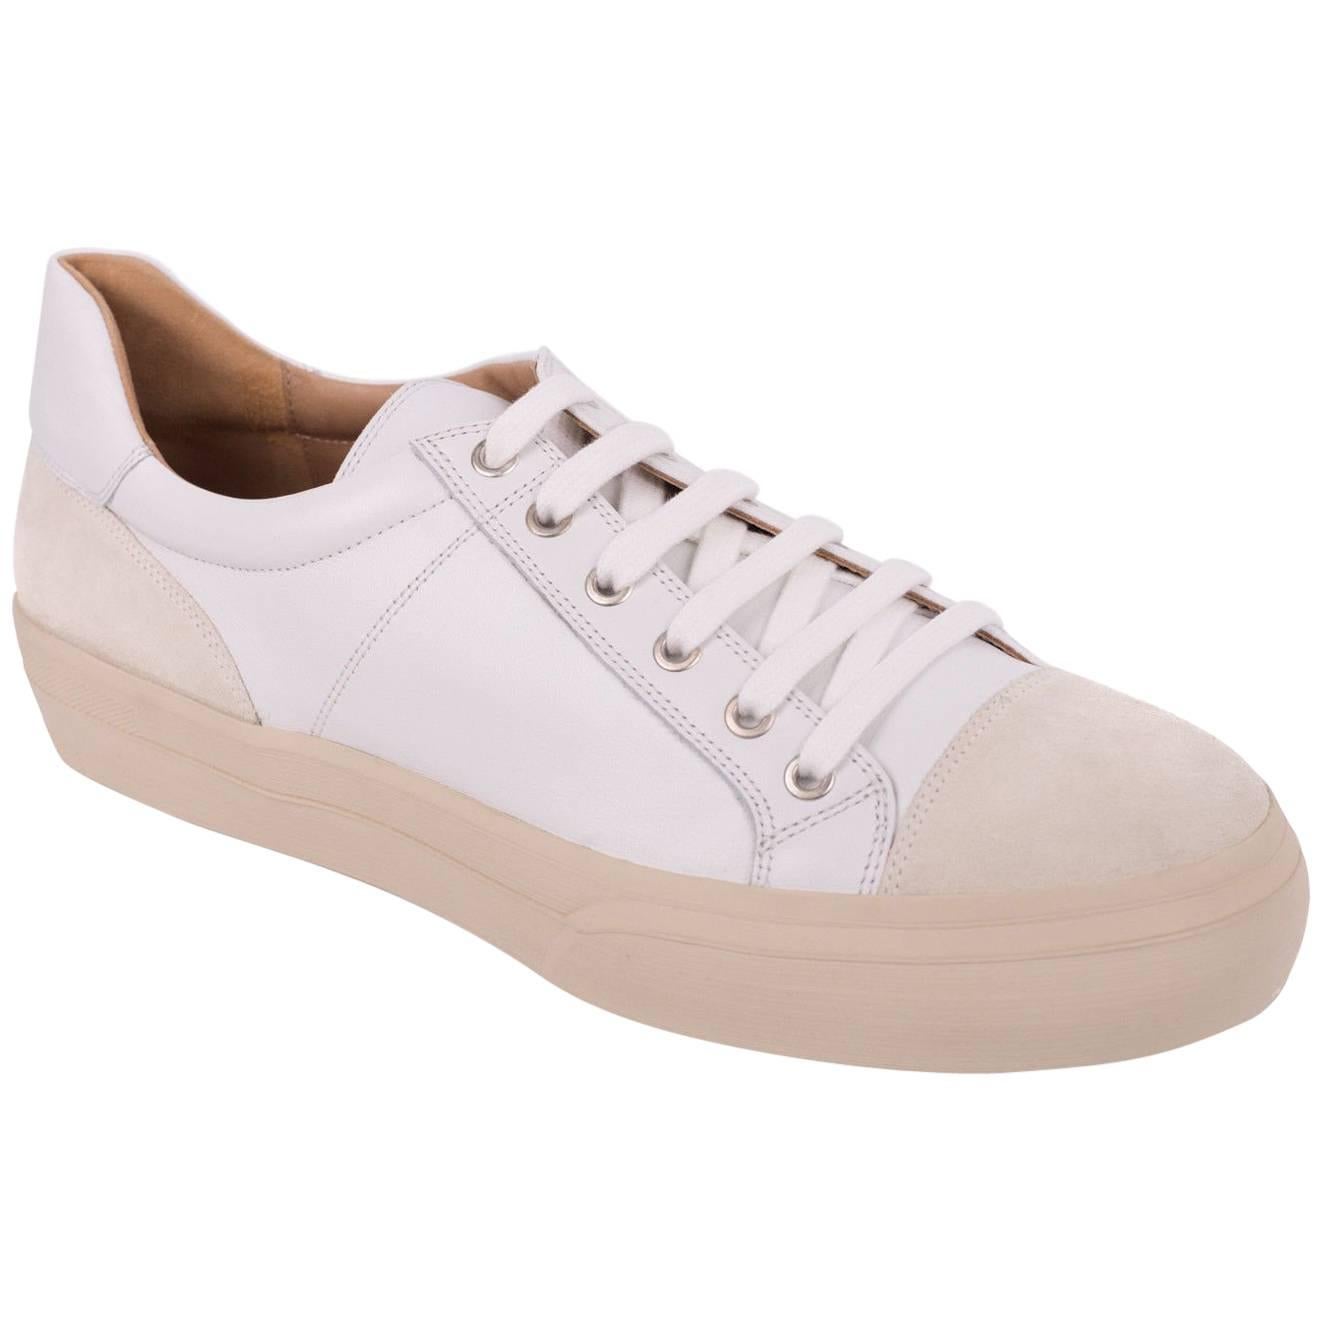 Dries Van Noten Men's White Leather Low Top Cap Toe Sneakers For Sale